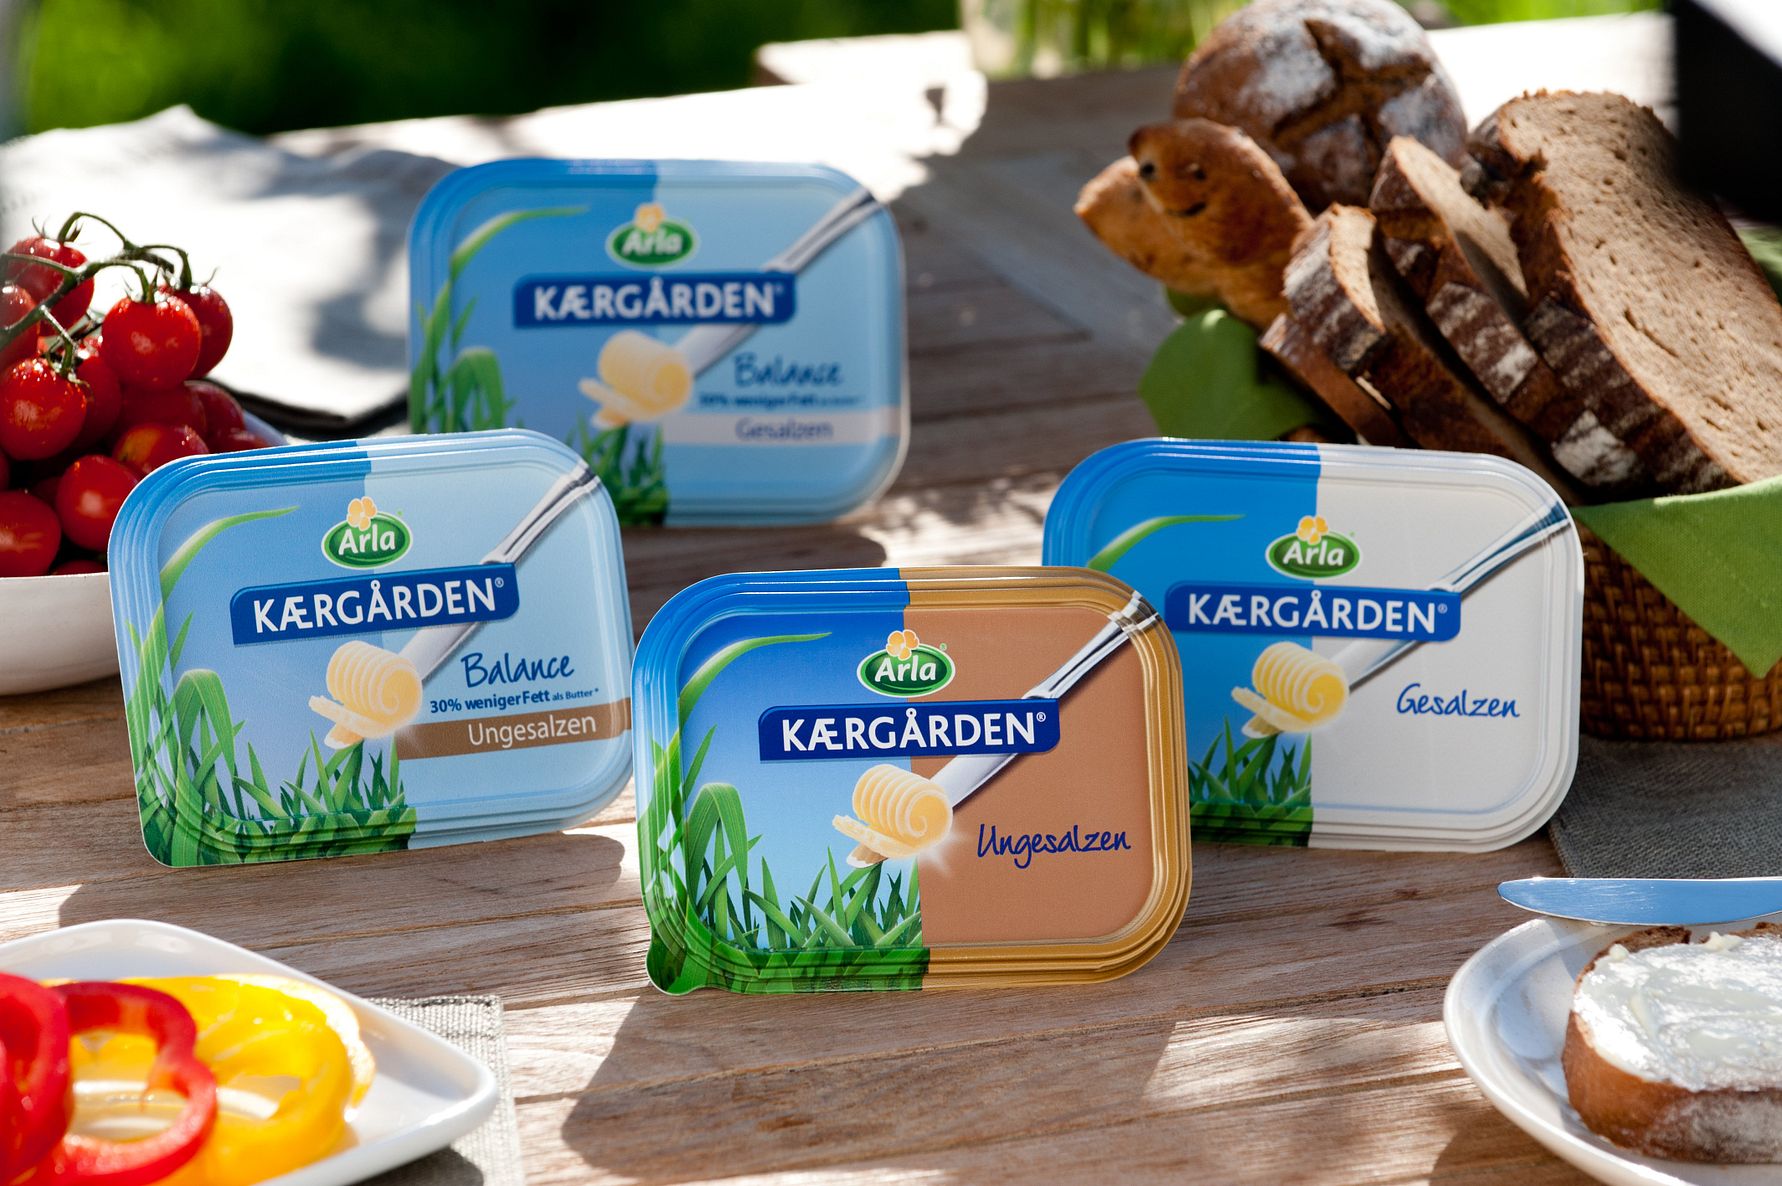 Arla Kærgården® | Deutschland Foods wird Arla produziert bald in